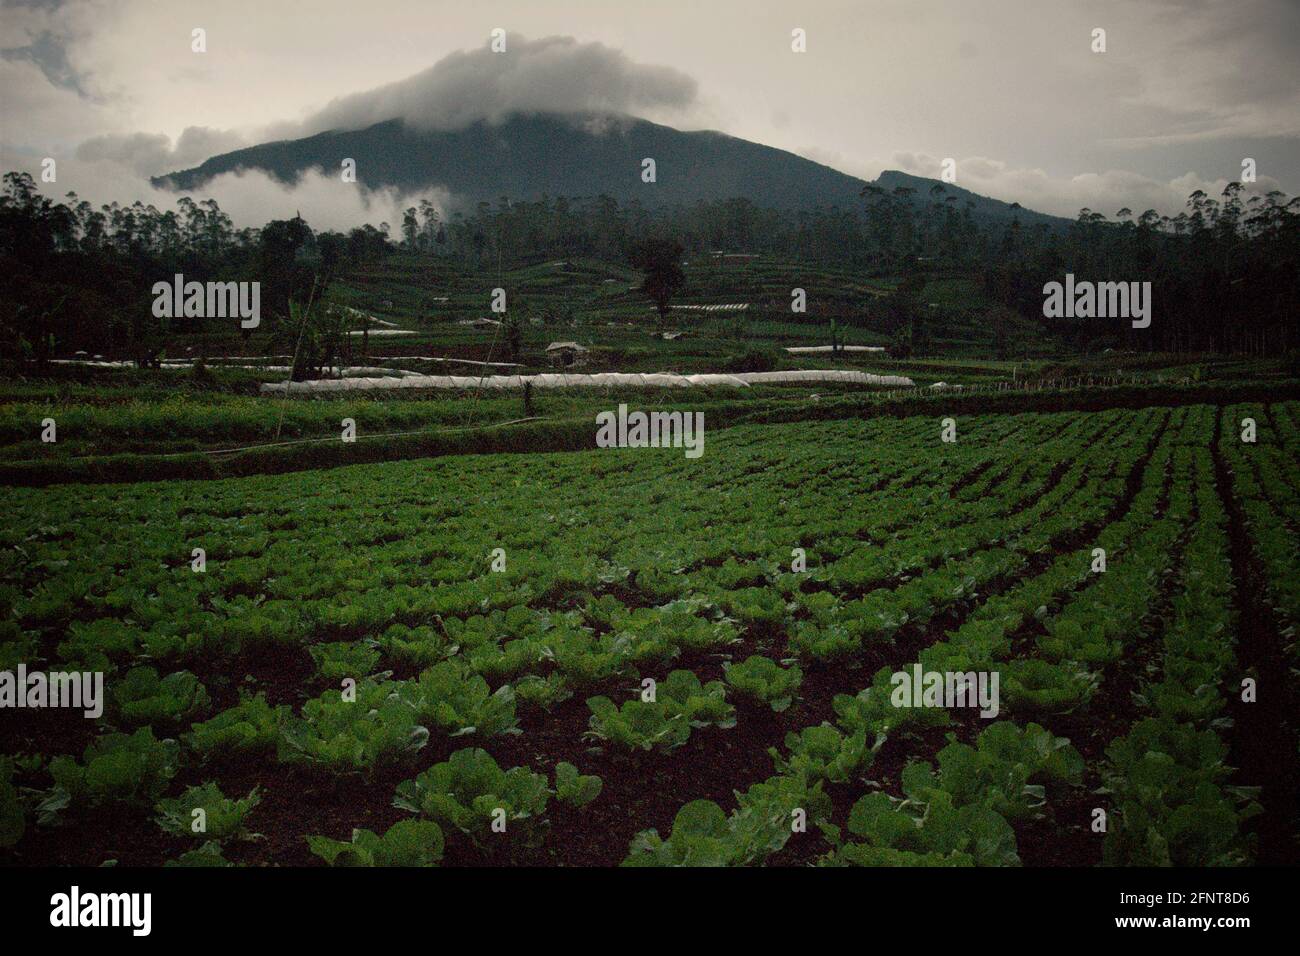 Landwirtschaftliche Felder außerhalb des Mount Gede Pangrango National Park, West Java, Indonesien; fotografiert im Hintergrund des Vulkans Mount Gede, im Jahr 2013 während eines Baumannahmeprogramms - ein Teil des Wiederaufforstungsprojekts im geschützten Park. Stockfoto